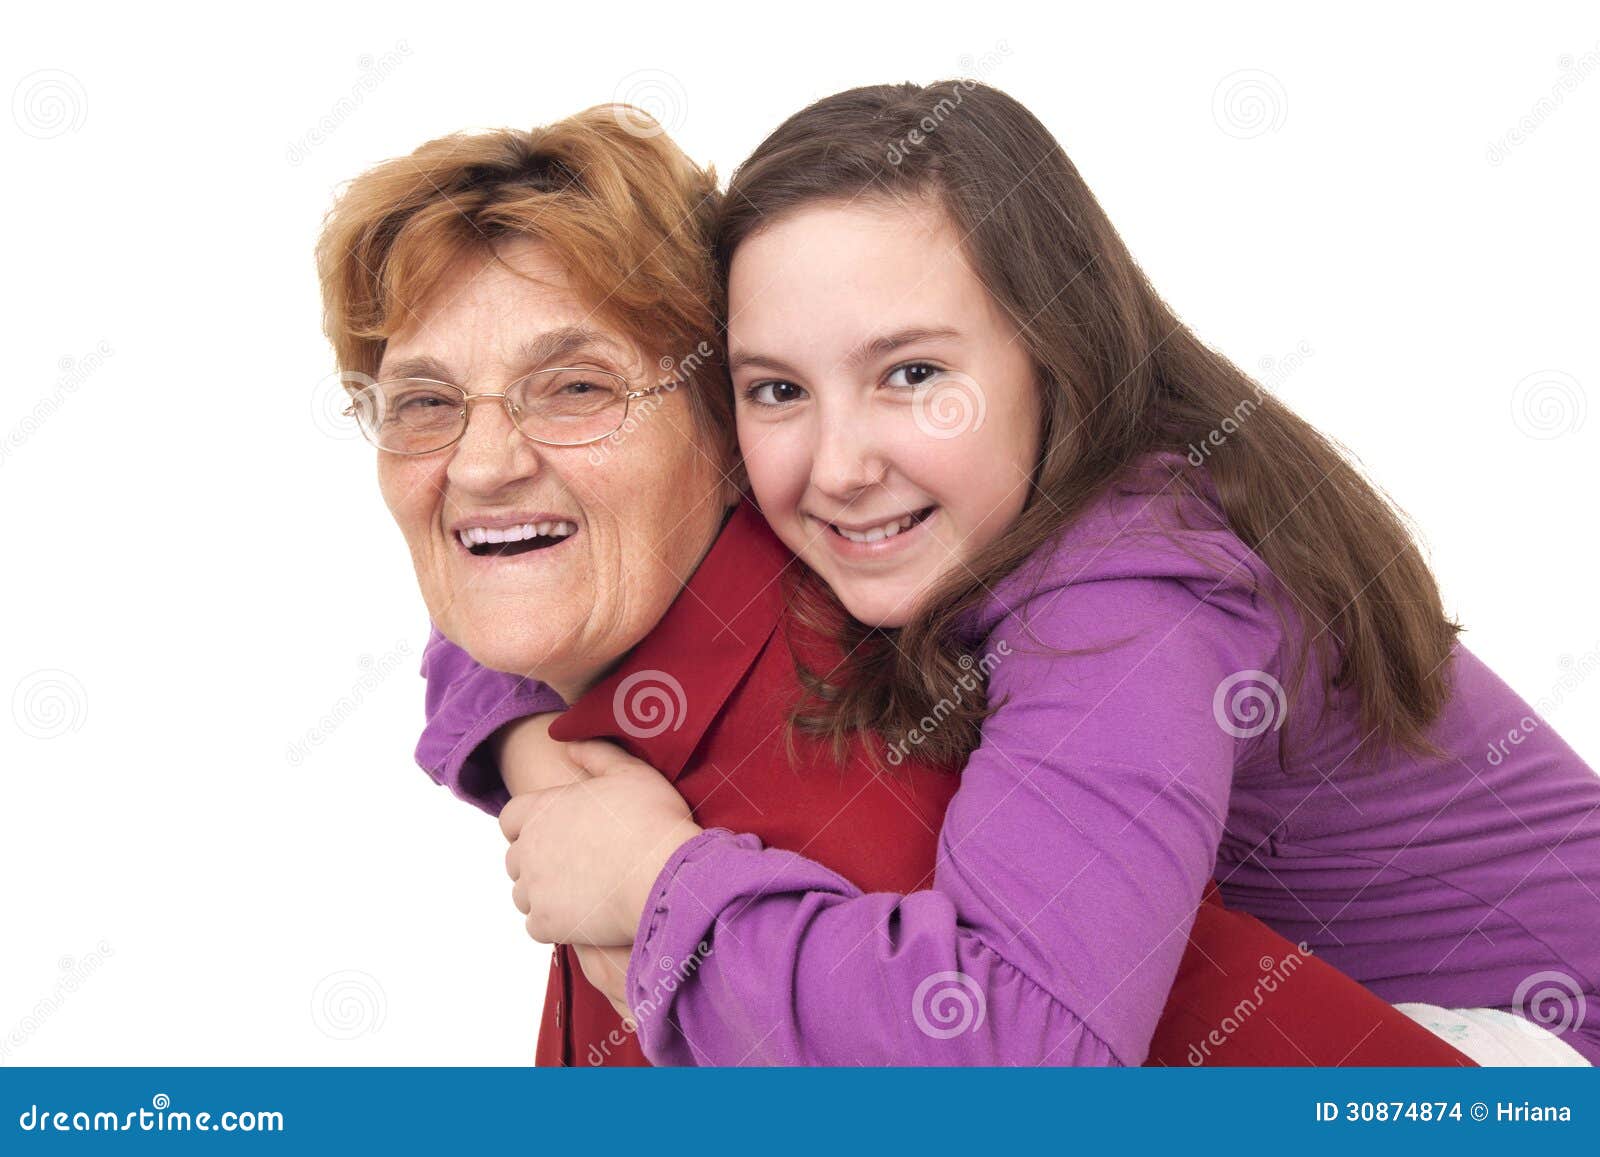 Обнимаю бабушку бабушку мою потому что минус. Объятия бабушки и внучки. Бабушка обнимает внучку. Объятия с бабушкой. Внучка обнимает бабушку.